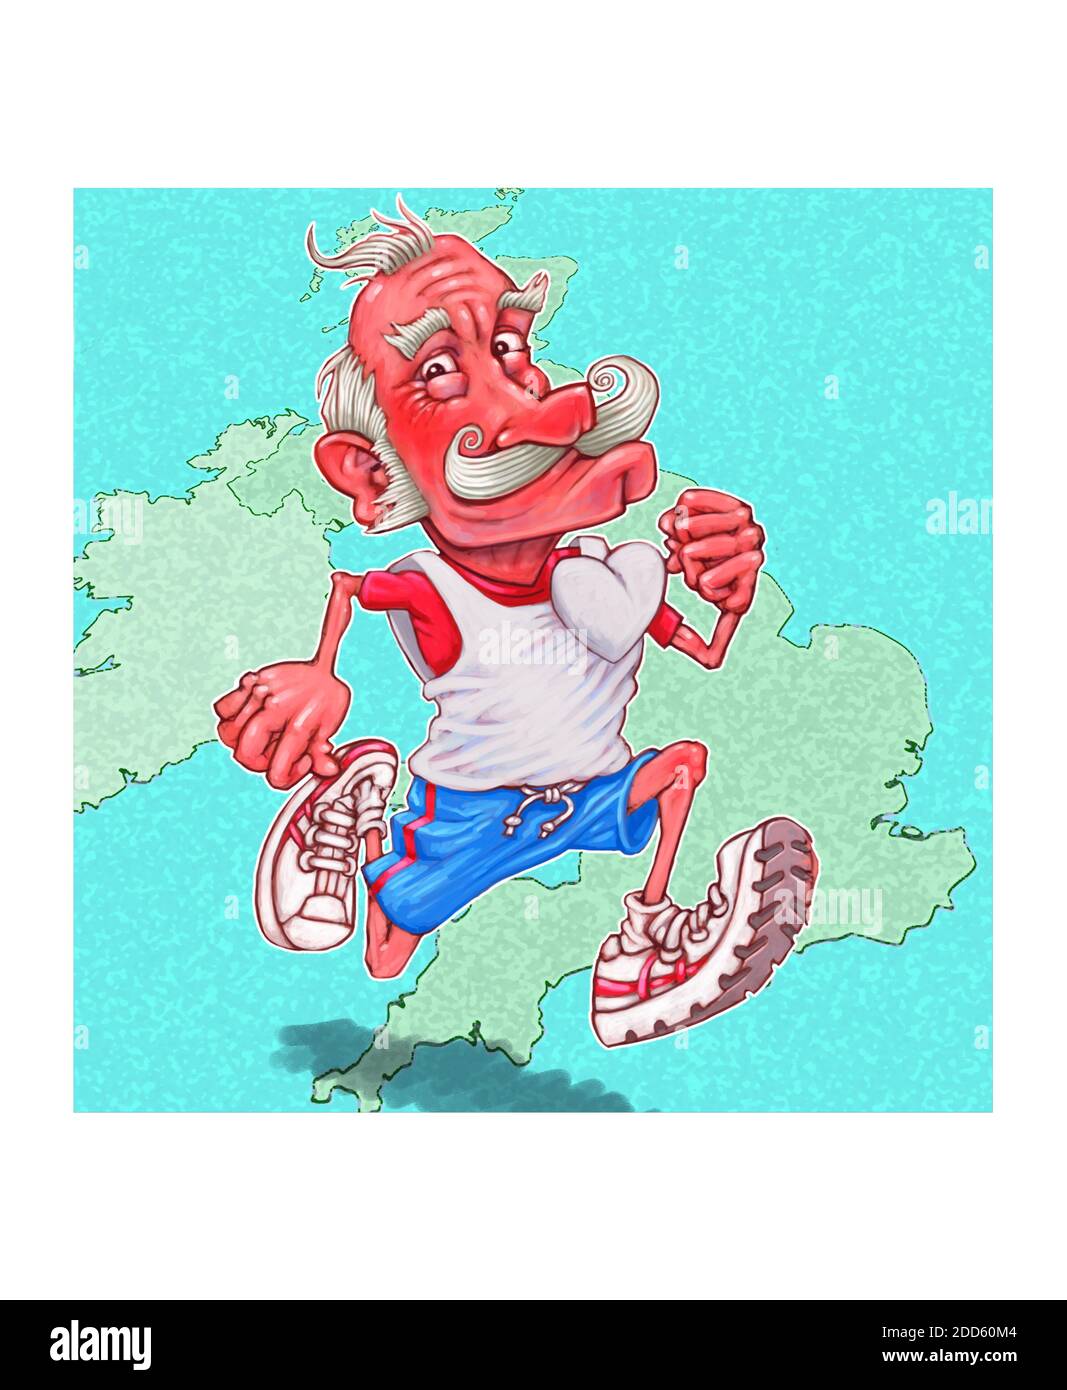 Illustrazione dell'opera d'arte di un elegante jogger maturo che attraversa un Mappa stilizzata che rappresenta la Gran Bretagna si adatta in risposta salute del cuore lockdown Covid-19 Foto Stock